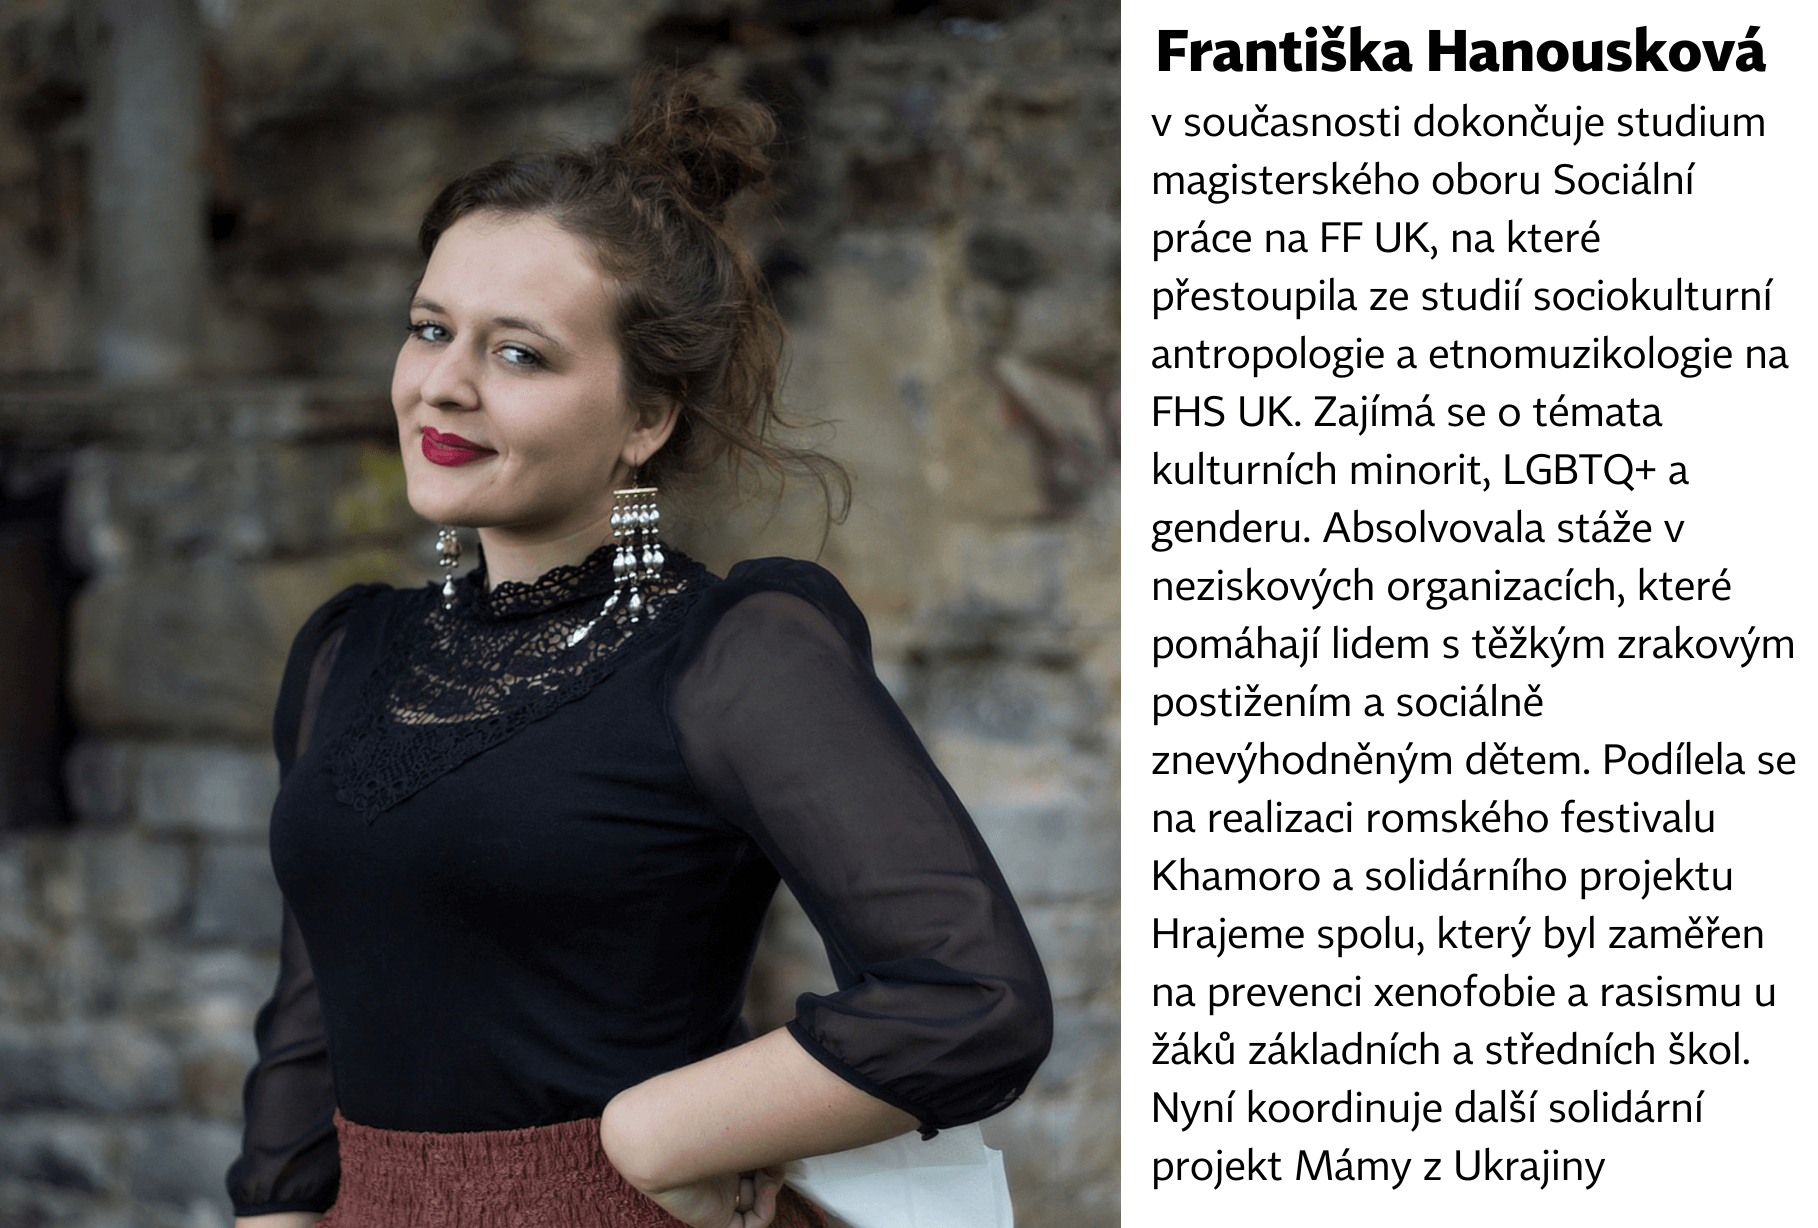 Františka Hanousková